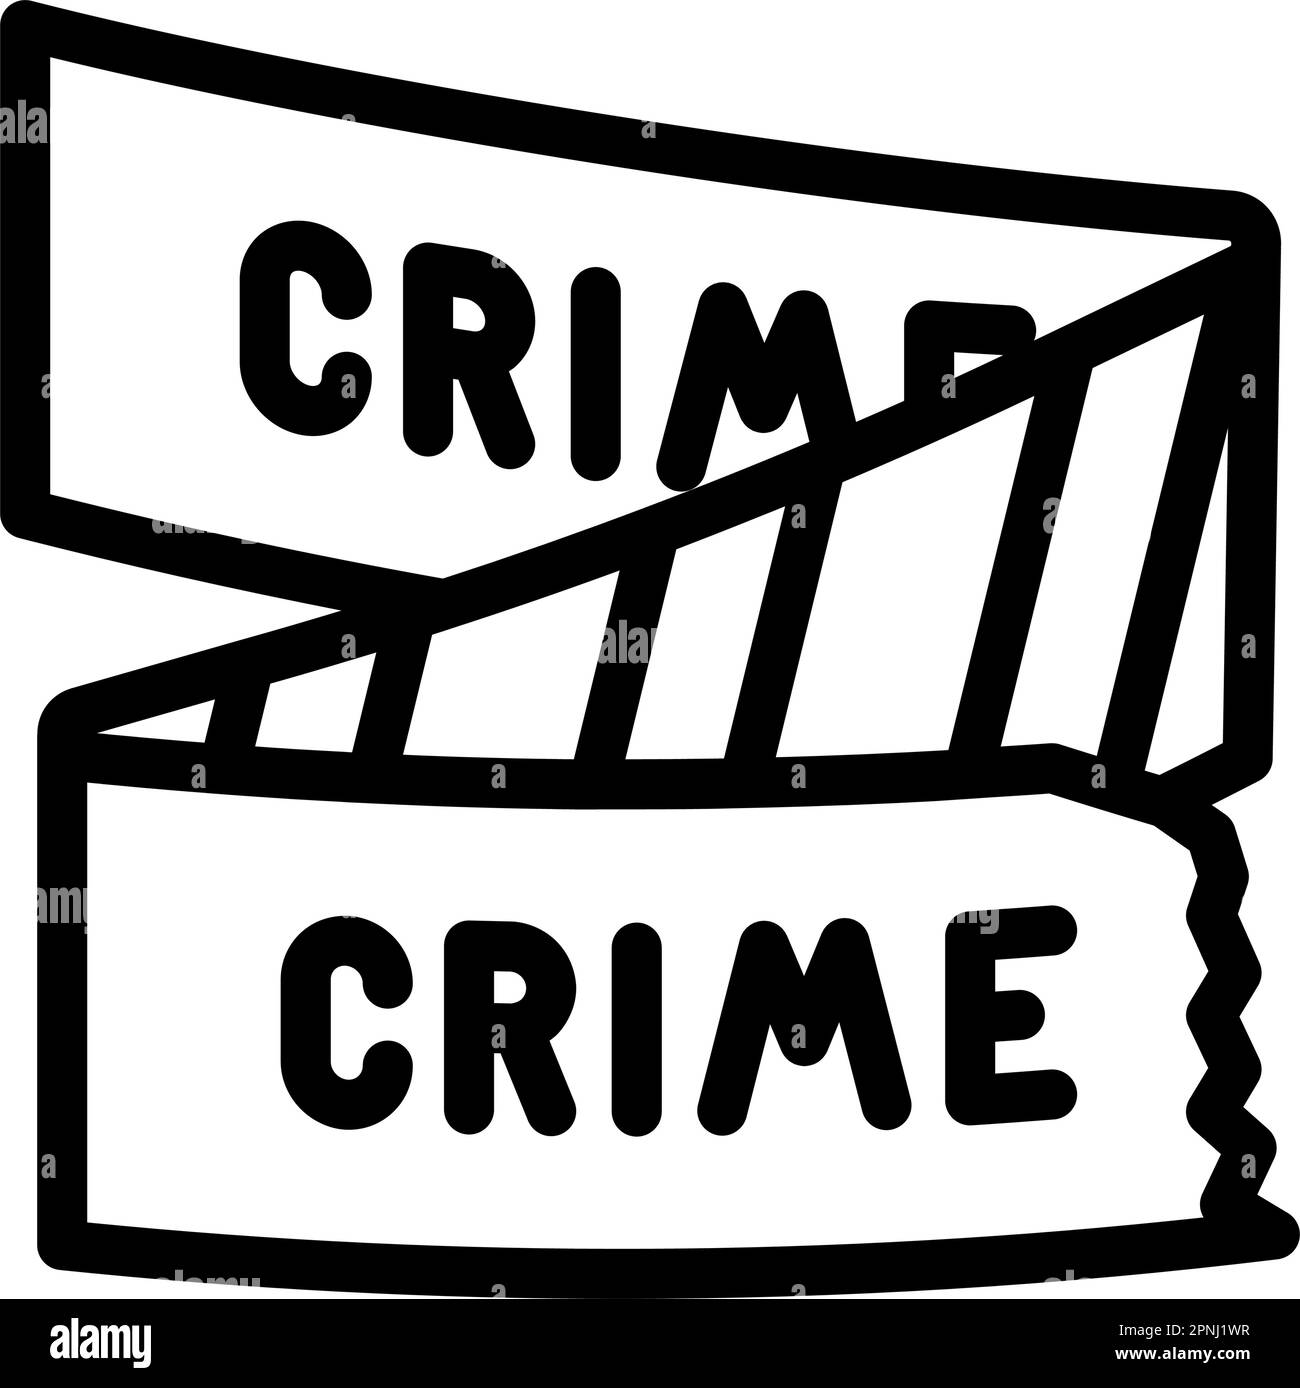 crime scene tape line icon vector illustration Stock Vector